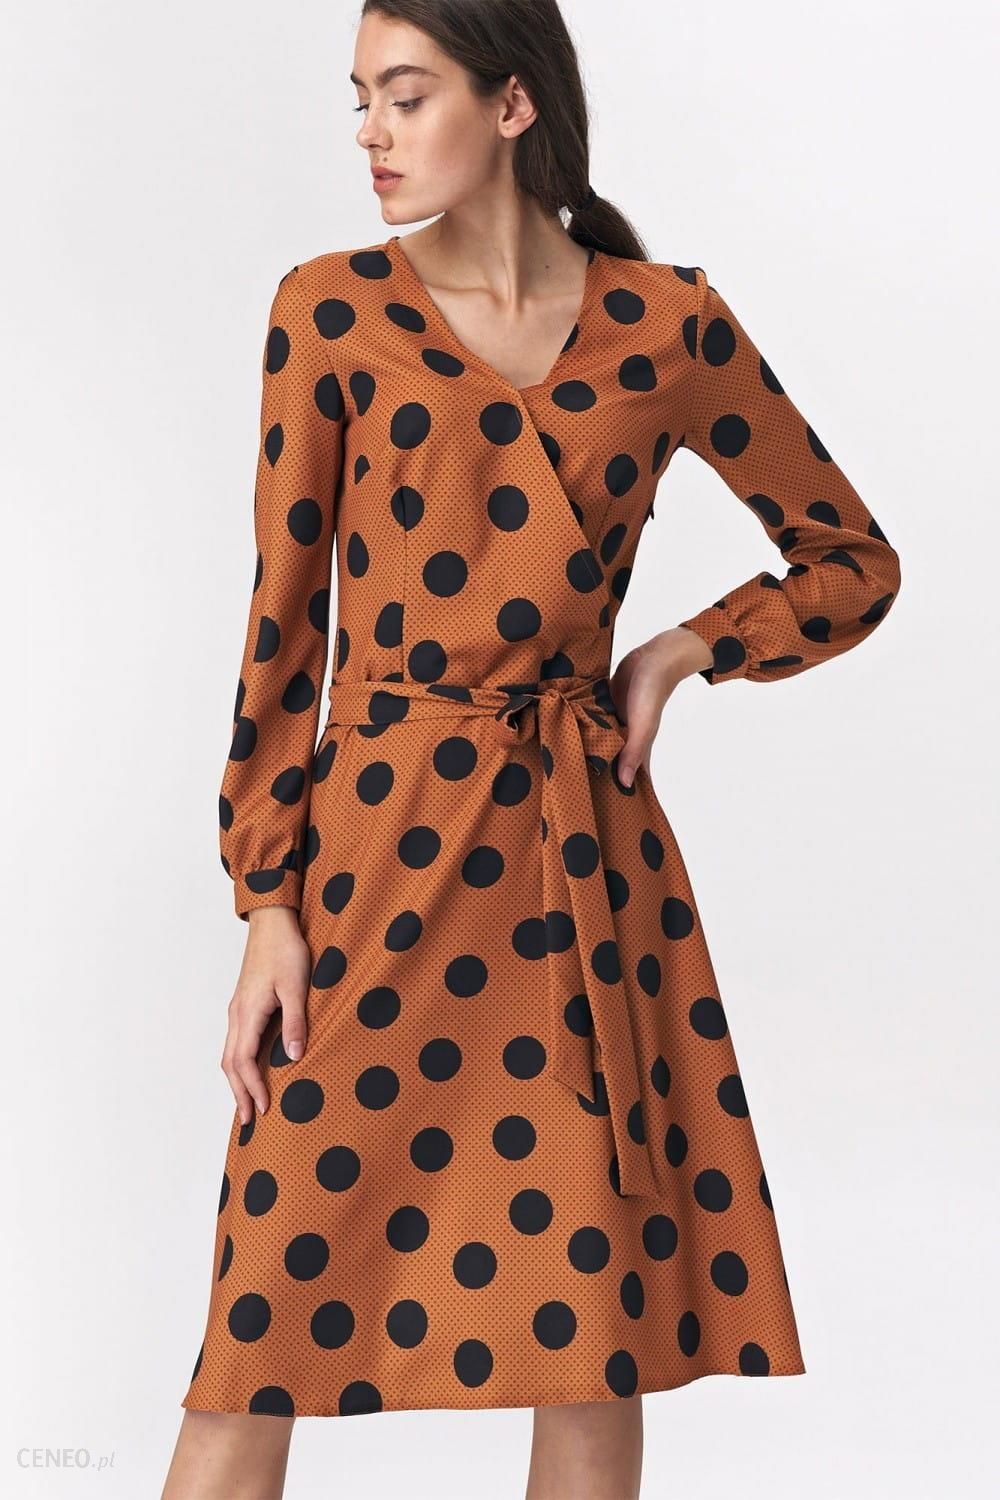 Brązowa rozkloszowana sukienka w grochy S136 Brown/Grochy (42) - Ceny i  opinie 